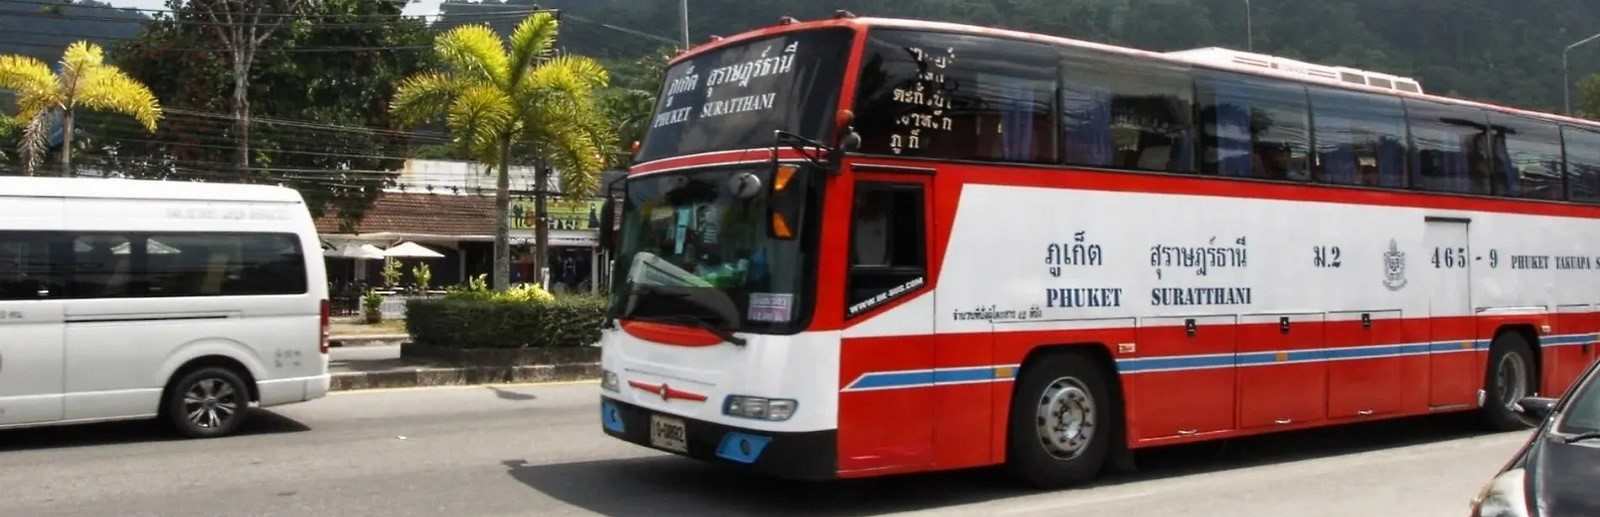 Se déplacer en bus en Thaïlande.jpg